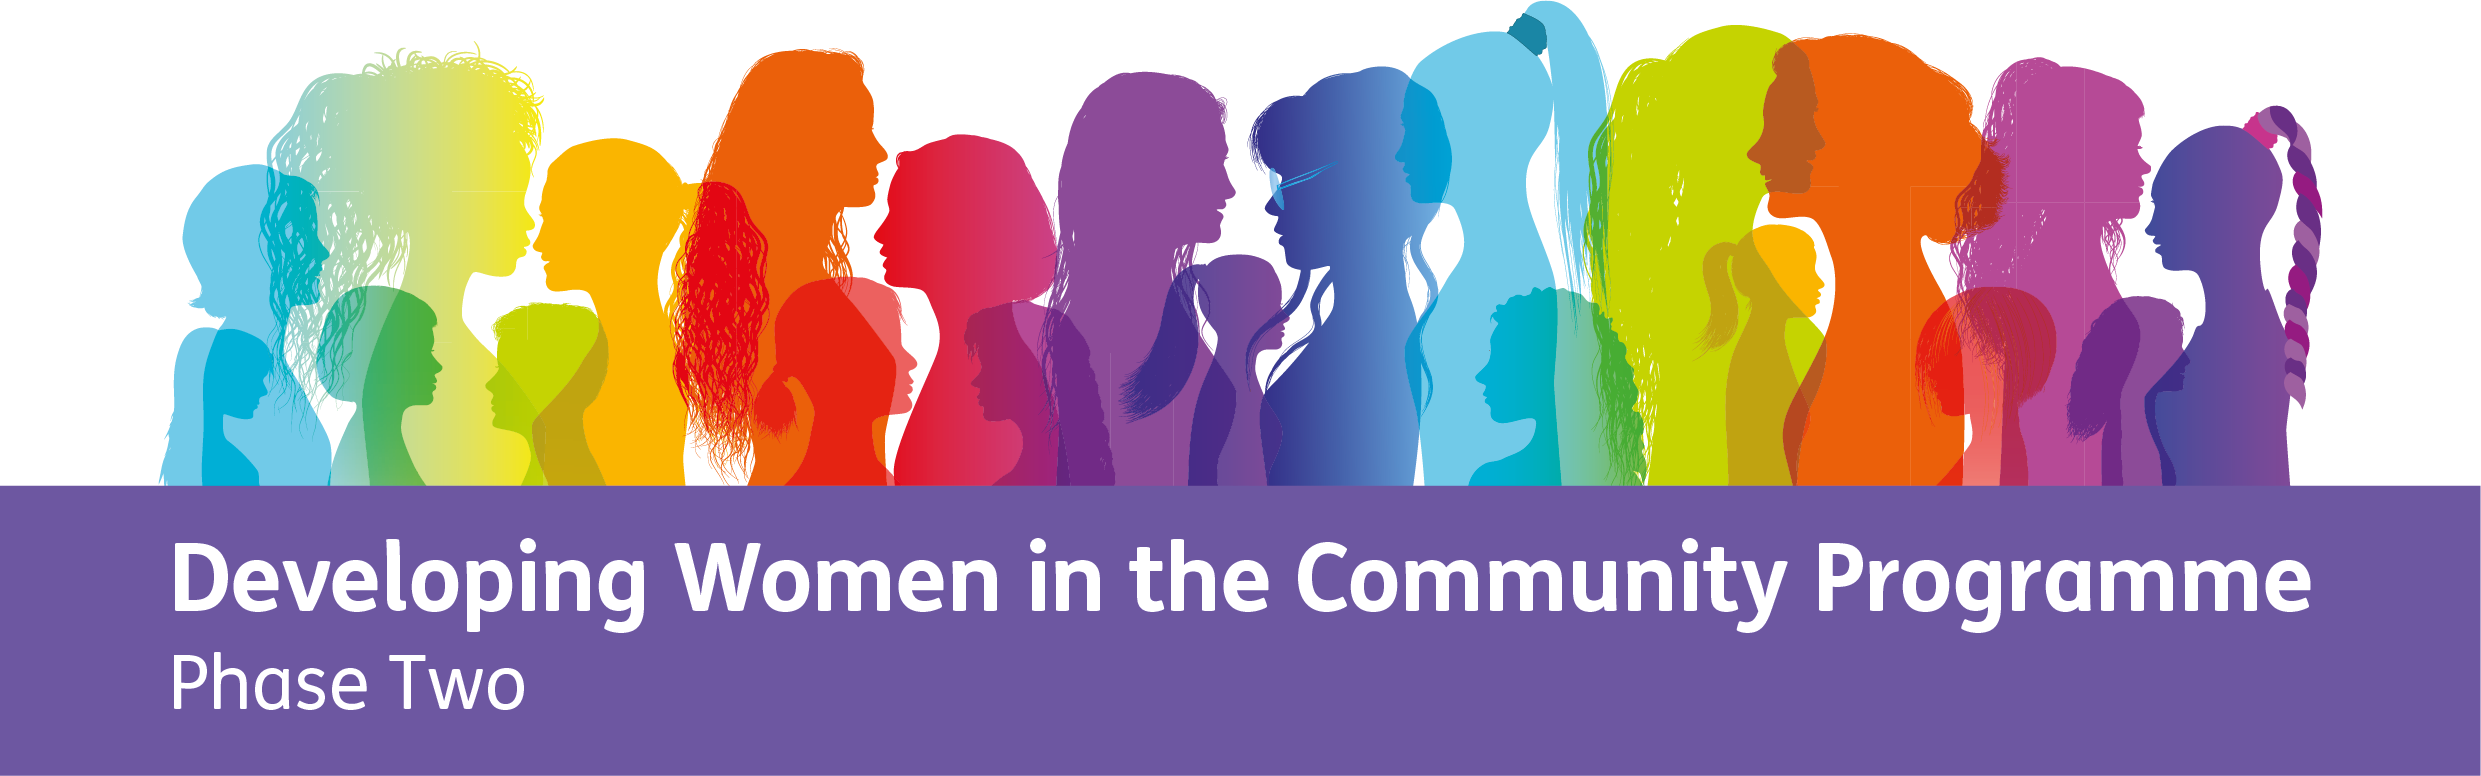 Developing Women in Community